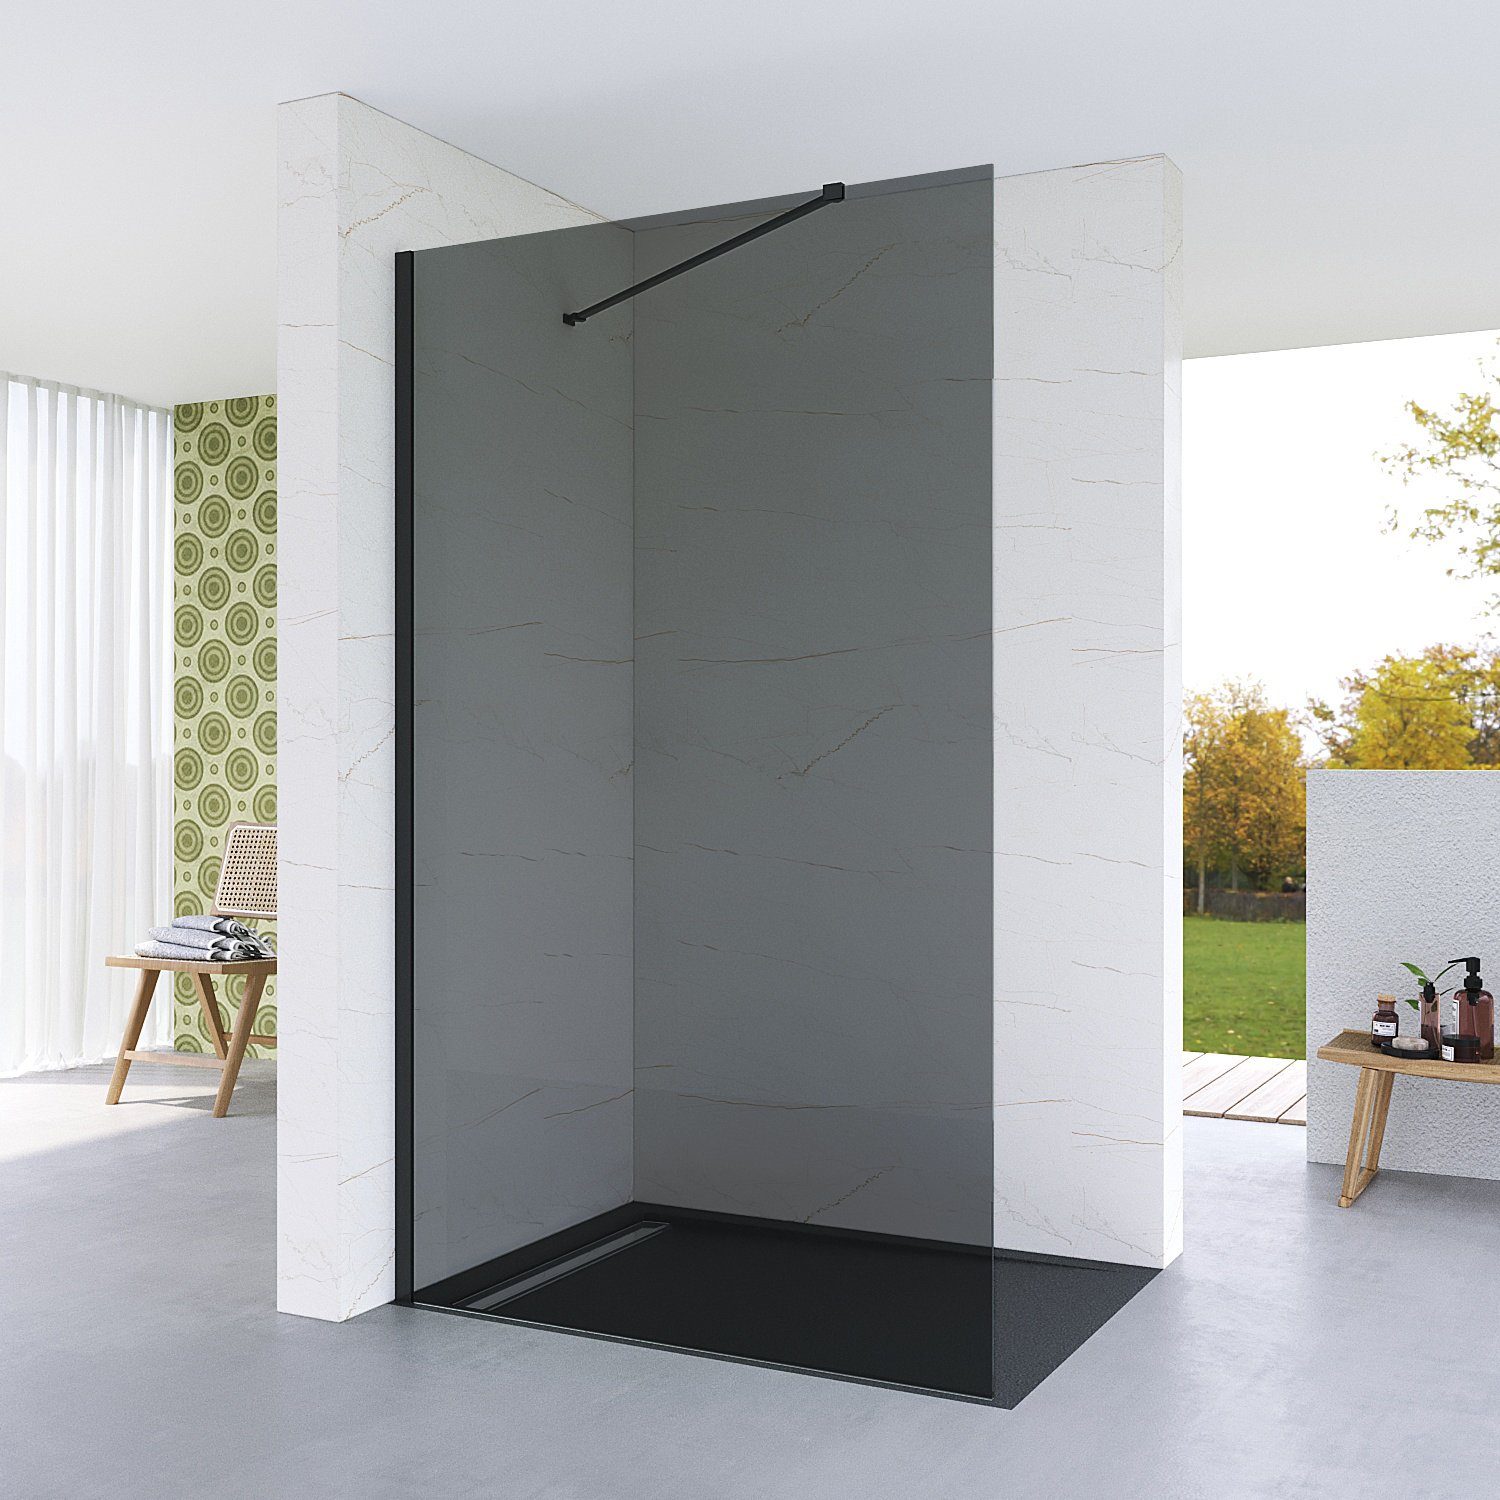 AQUALAVOS Walk-in-Dusche Duschwand 100/120 cm Glas Duschabtrennung Walk-In  Dusche Duschglaswand, 8mm Einscheibensicherheitsglas mit Nano Beschichtung,  mit Verstellbereic, Höhe 200 cm, graues Glas